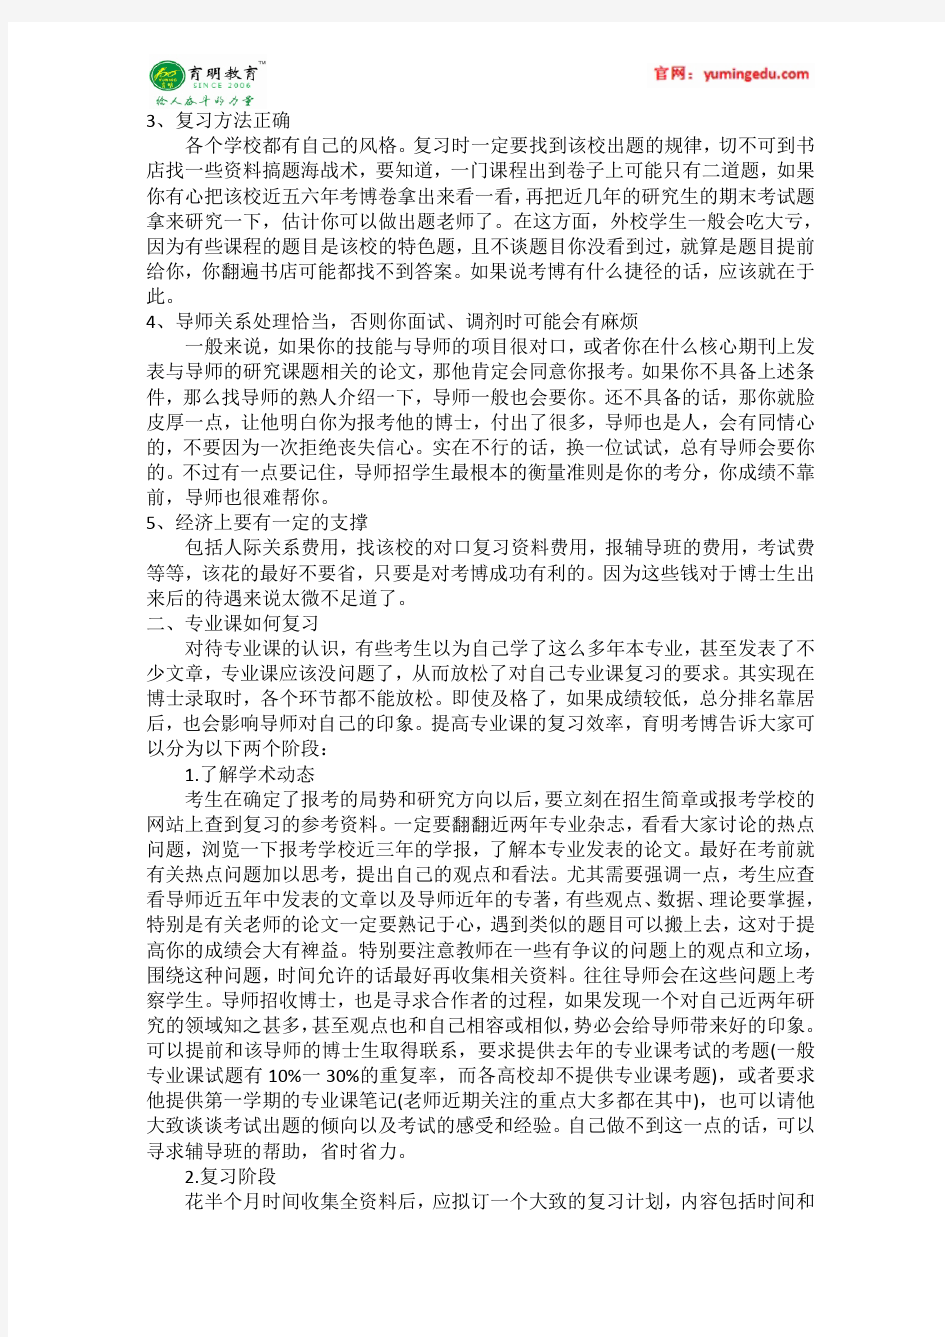 2016年南开大学中国政府与政治 朱光磊 考博复试线 考博真题 考博参考书